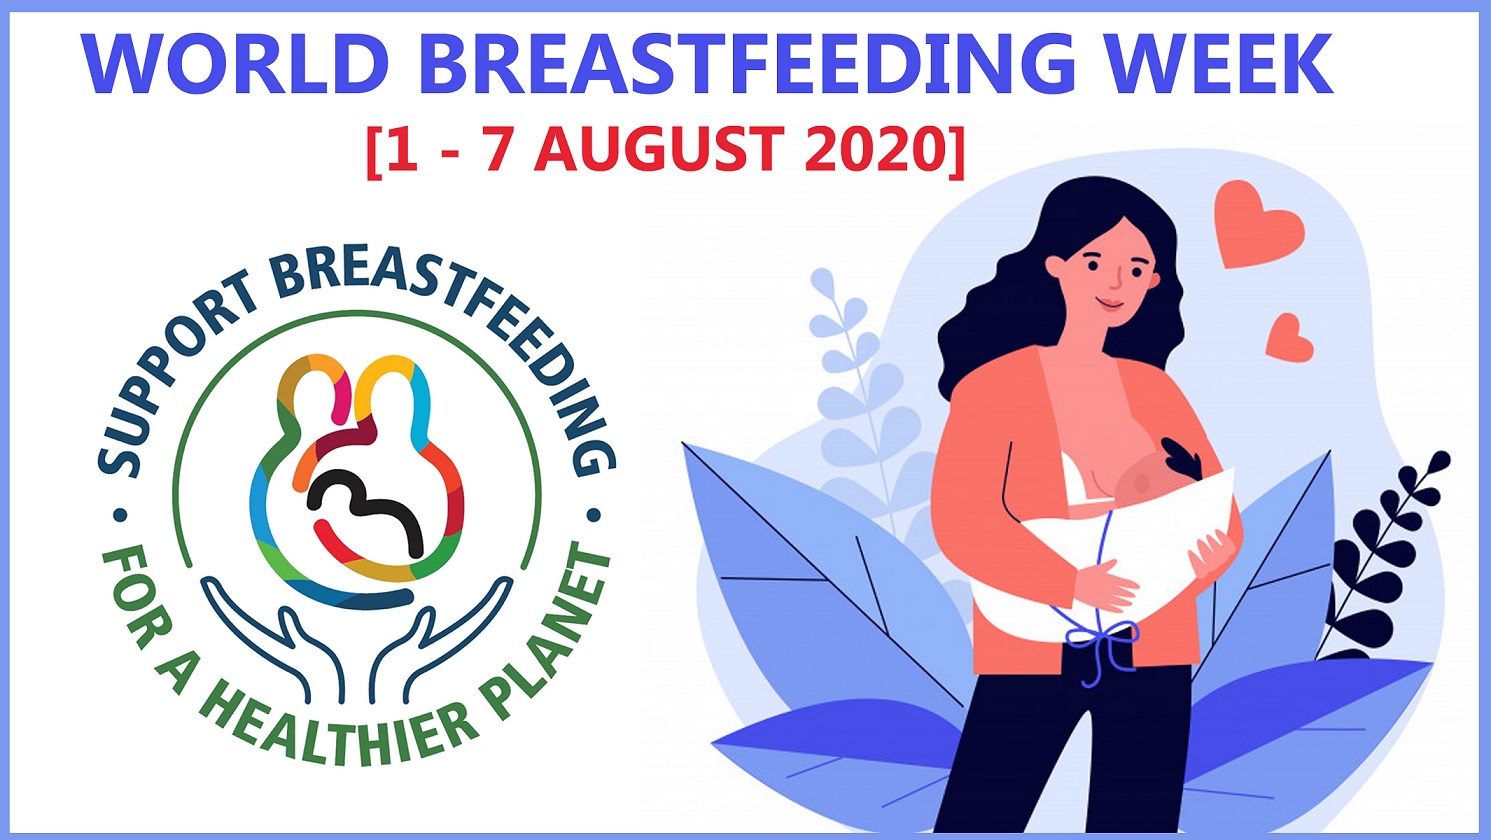 Breastfeeding week covid-19 and diabetes